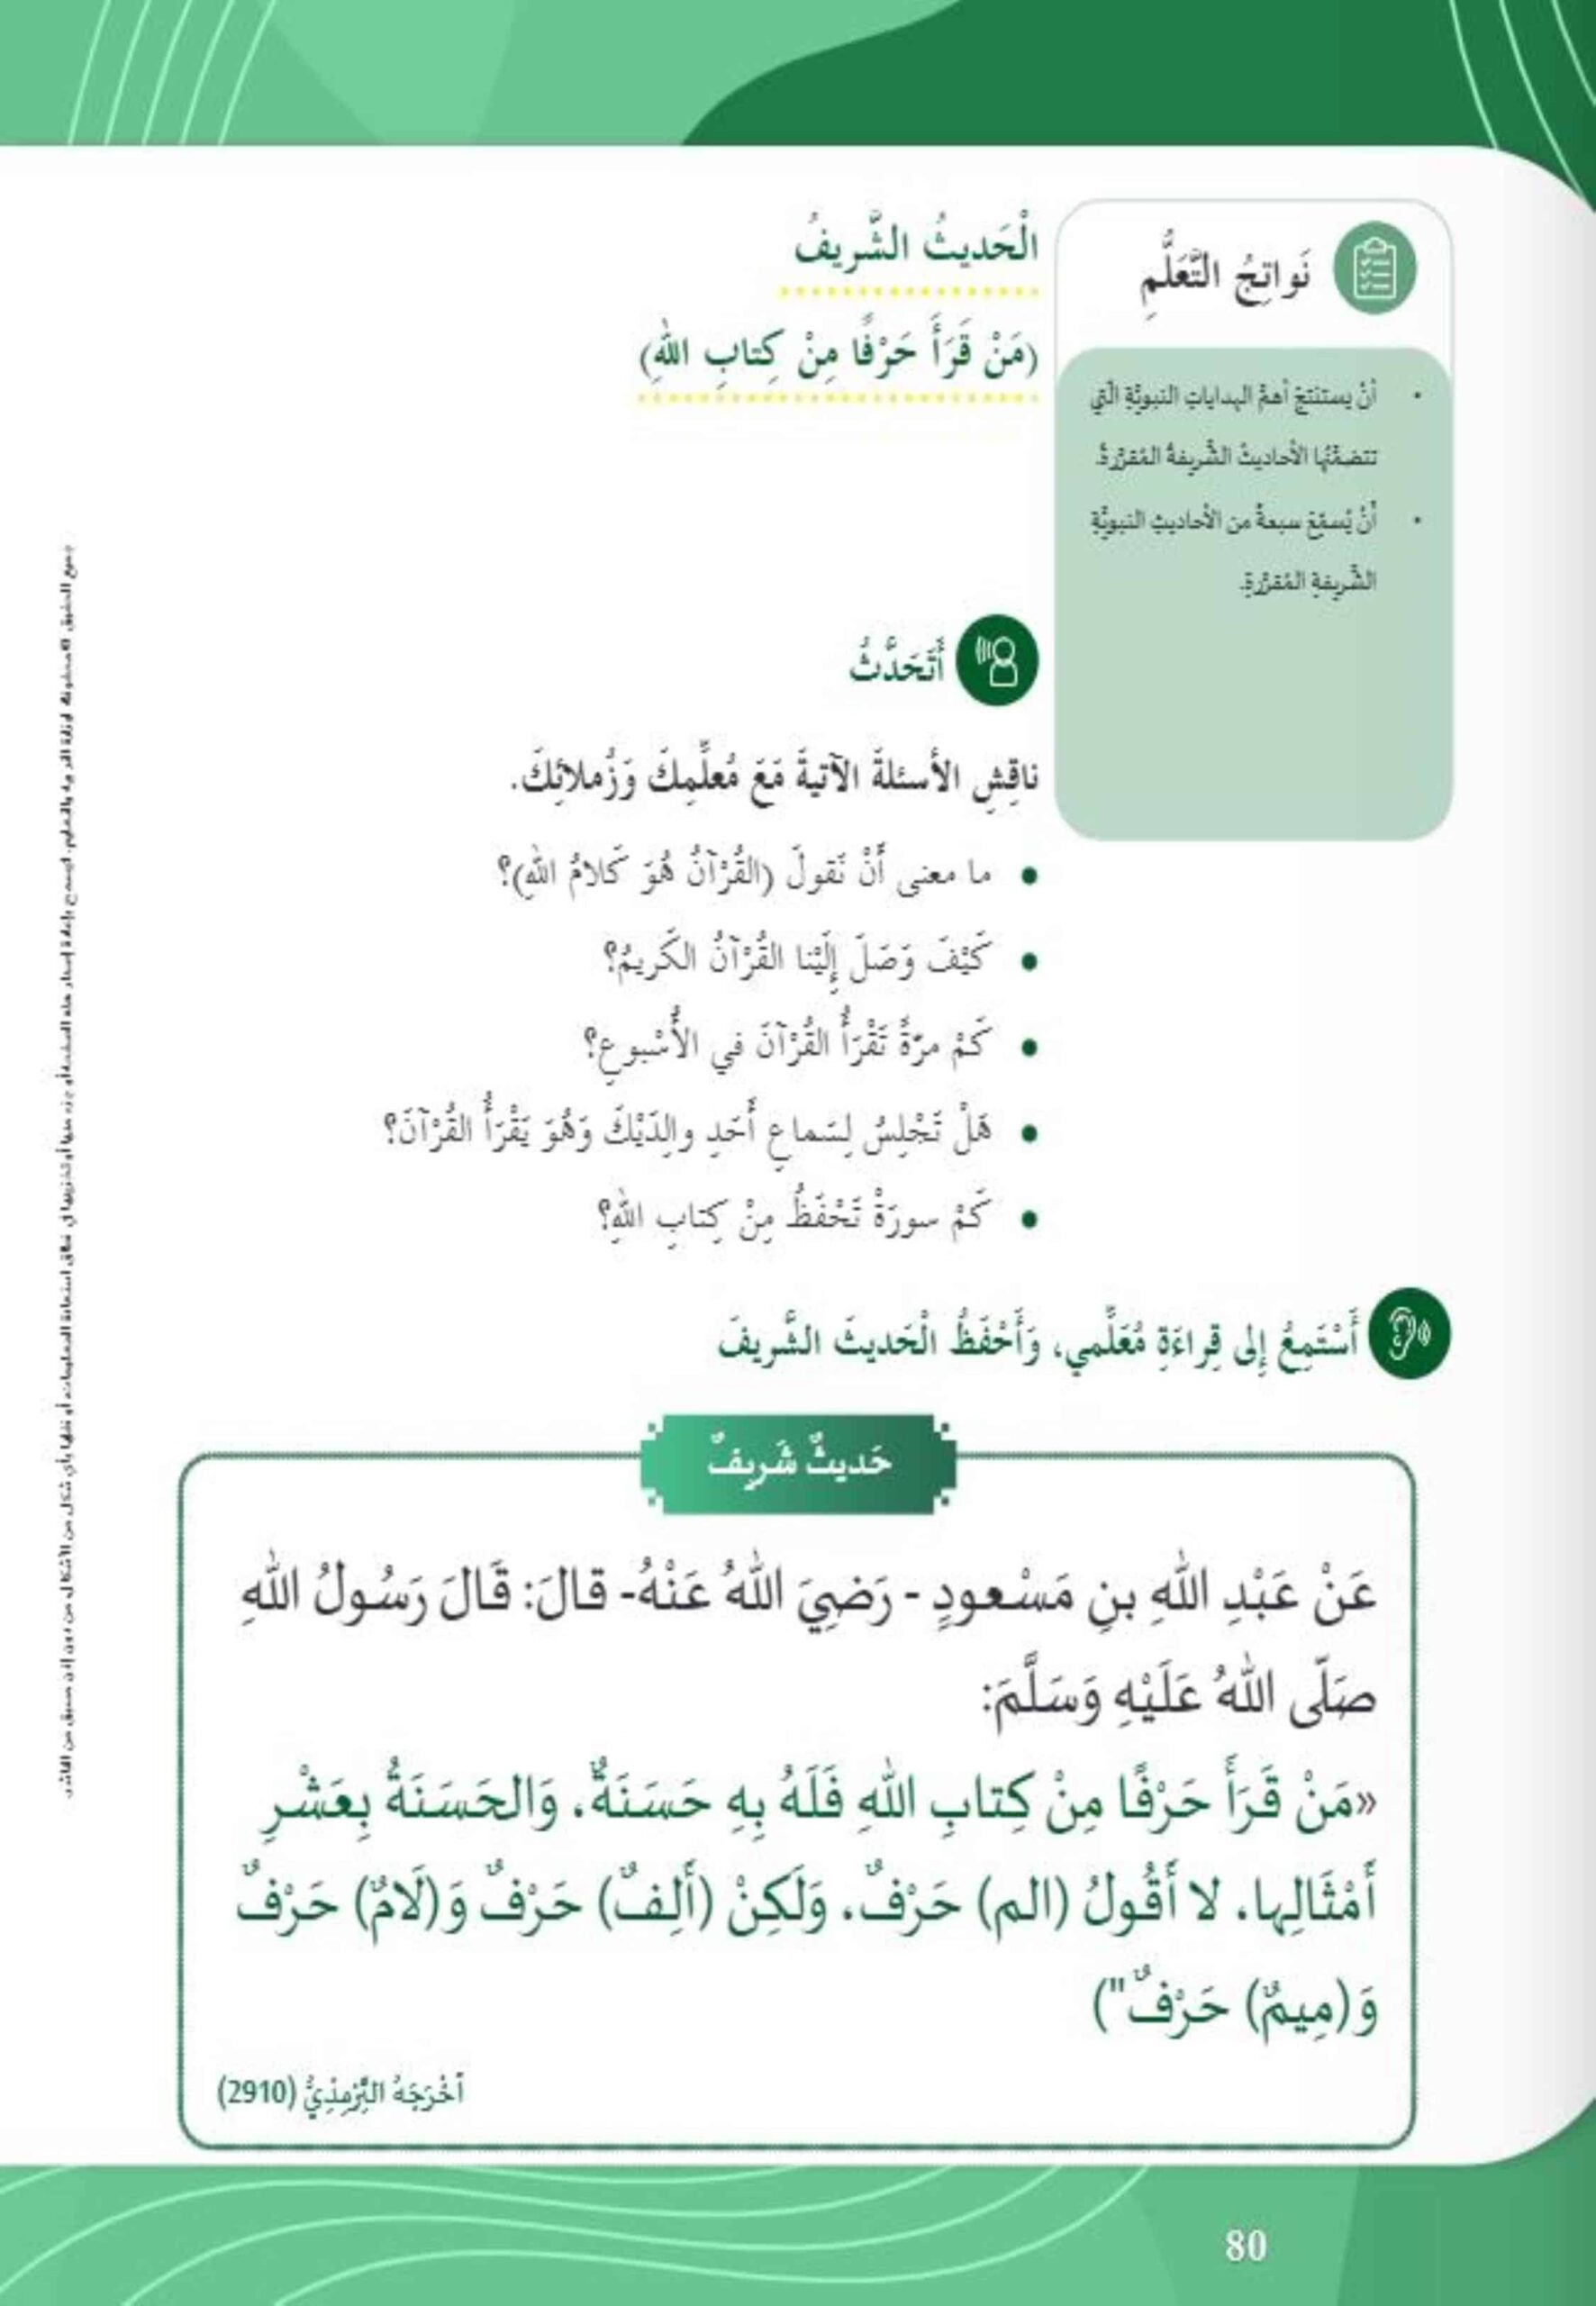 حل درس من قرأ حرفا من كتاب الله التربية الإسلامية الصف الثاني